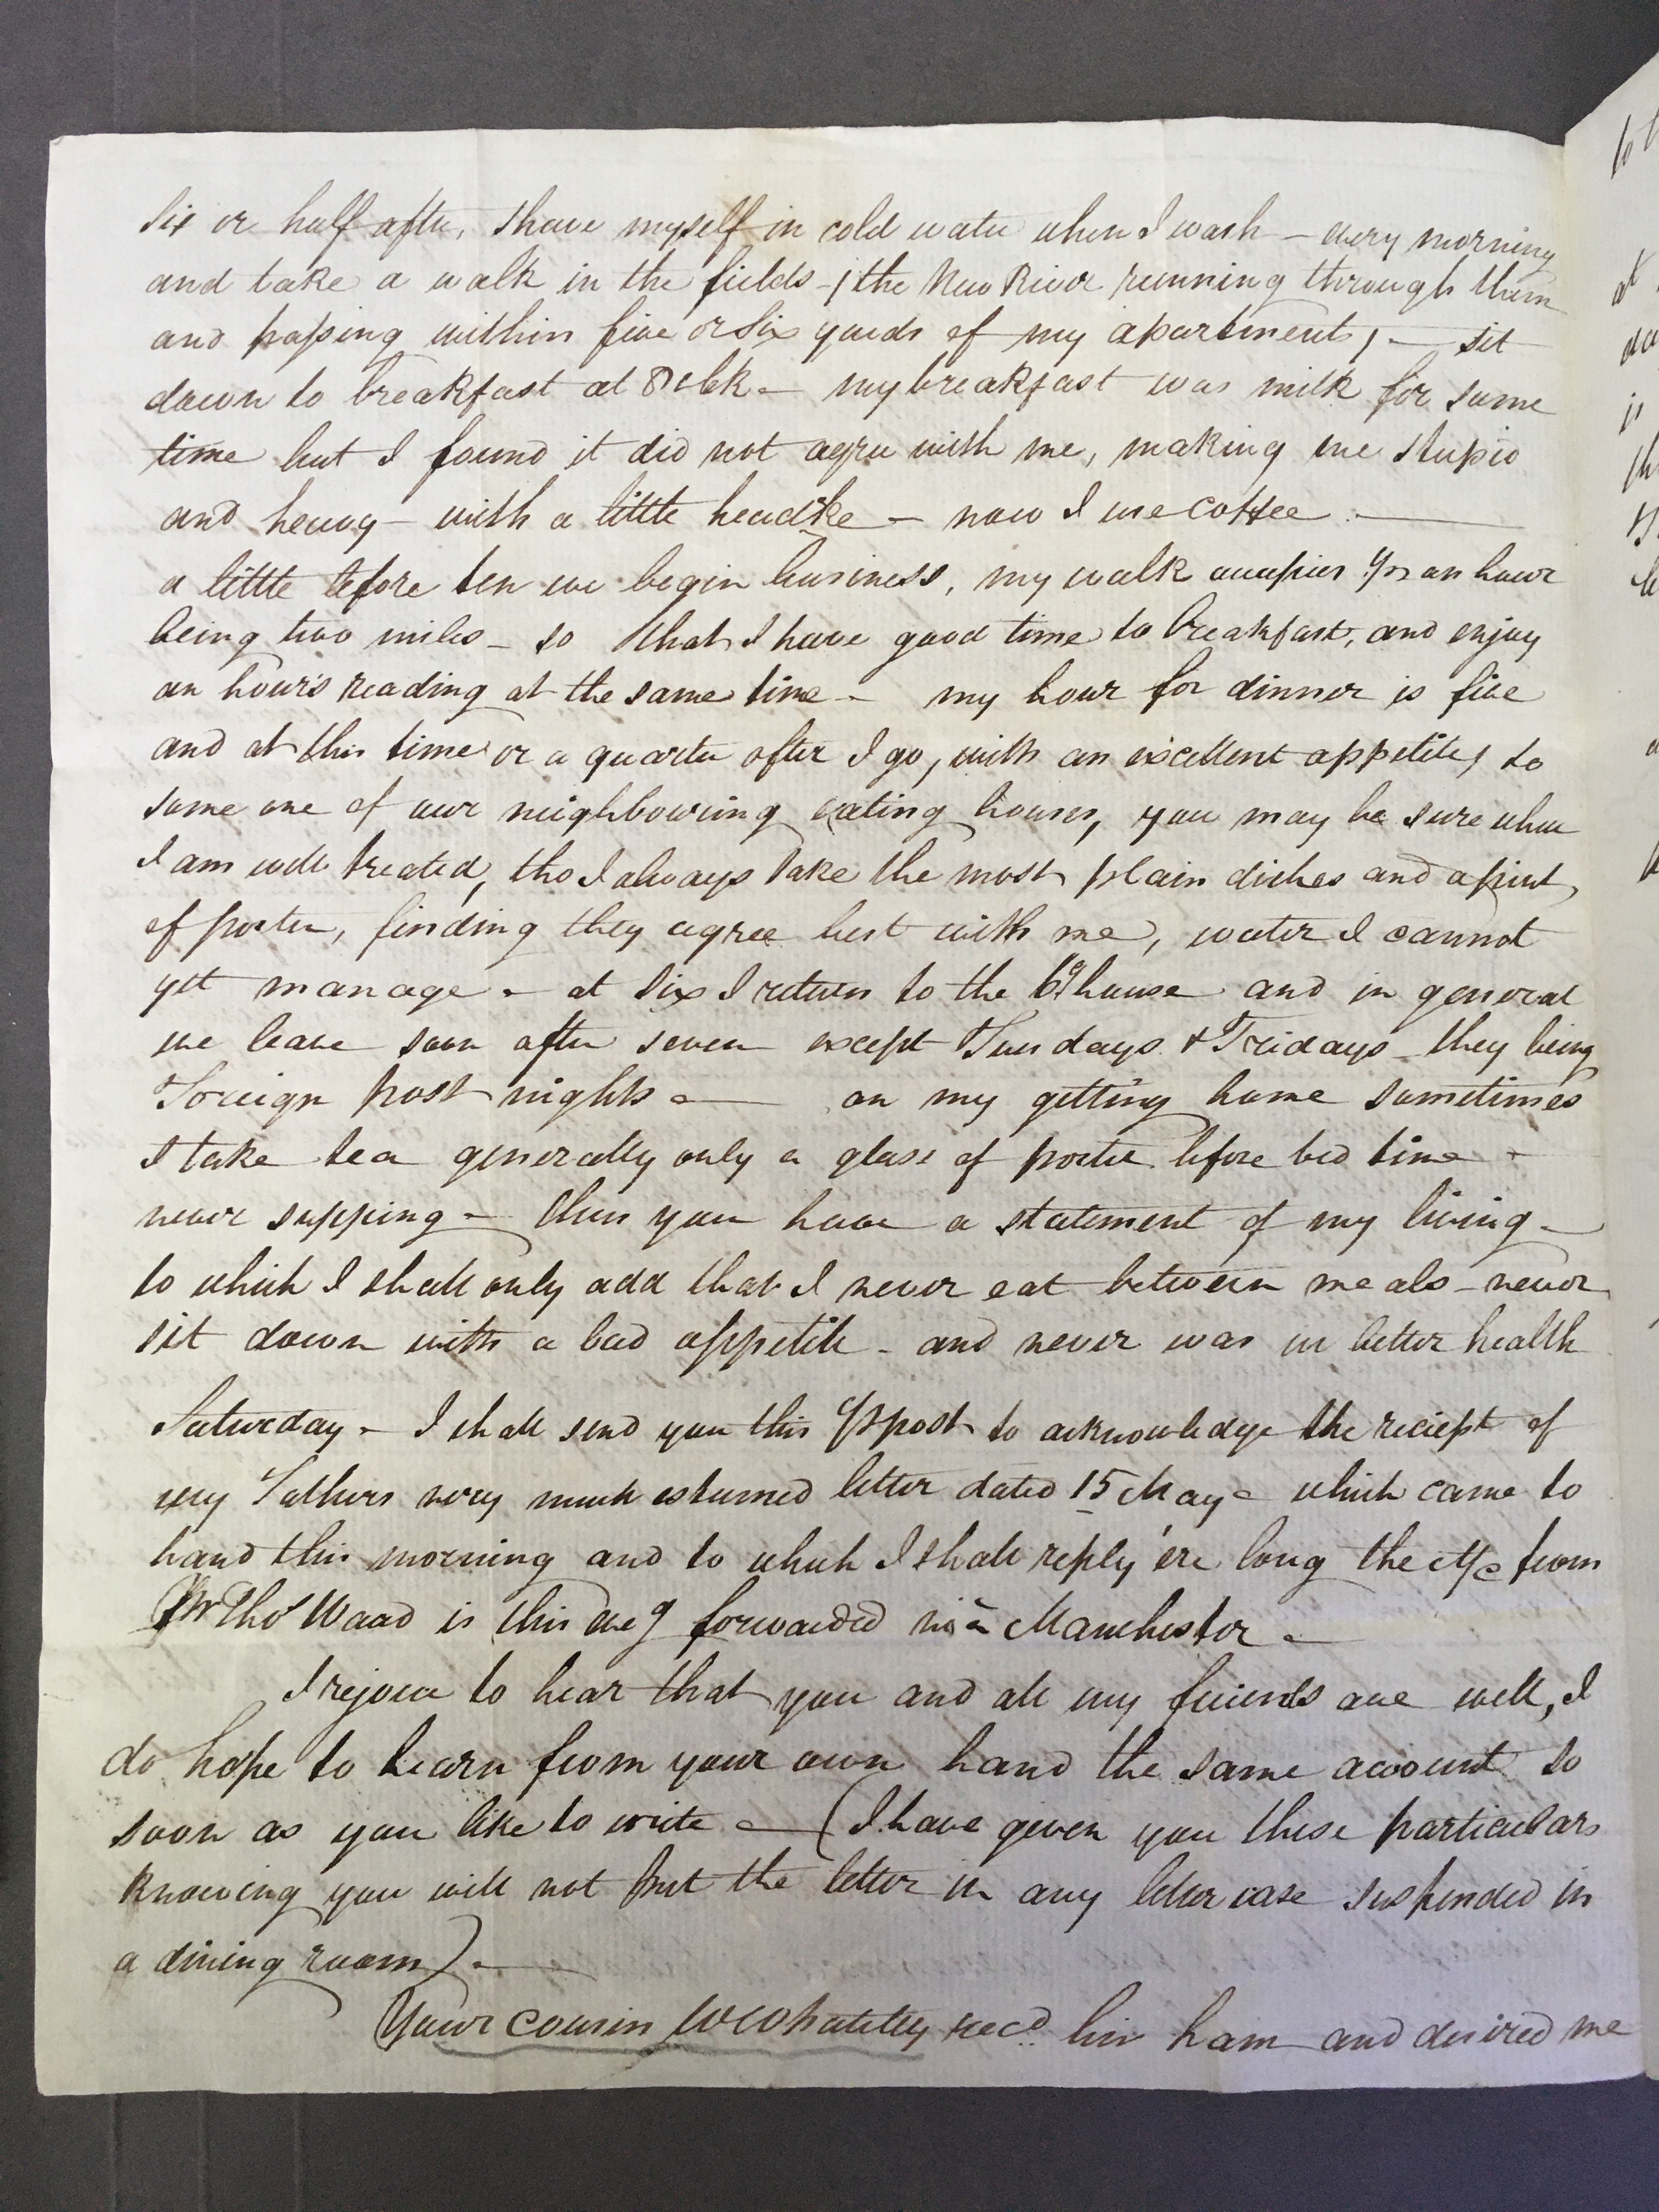 Image #2 of letter: John Longsdon to Elizabeth Longsdon (snr), 17 May 1810